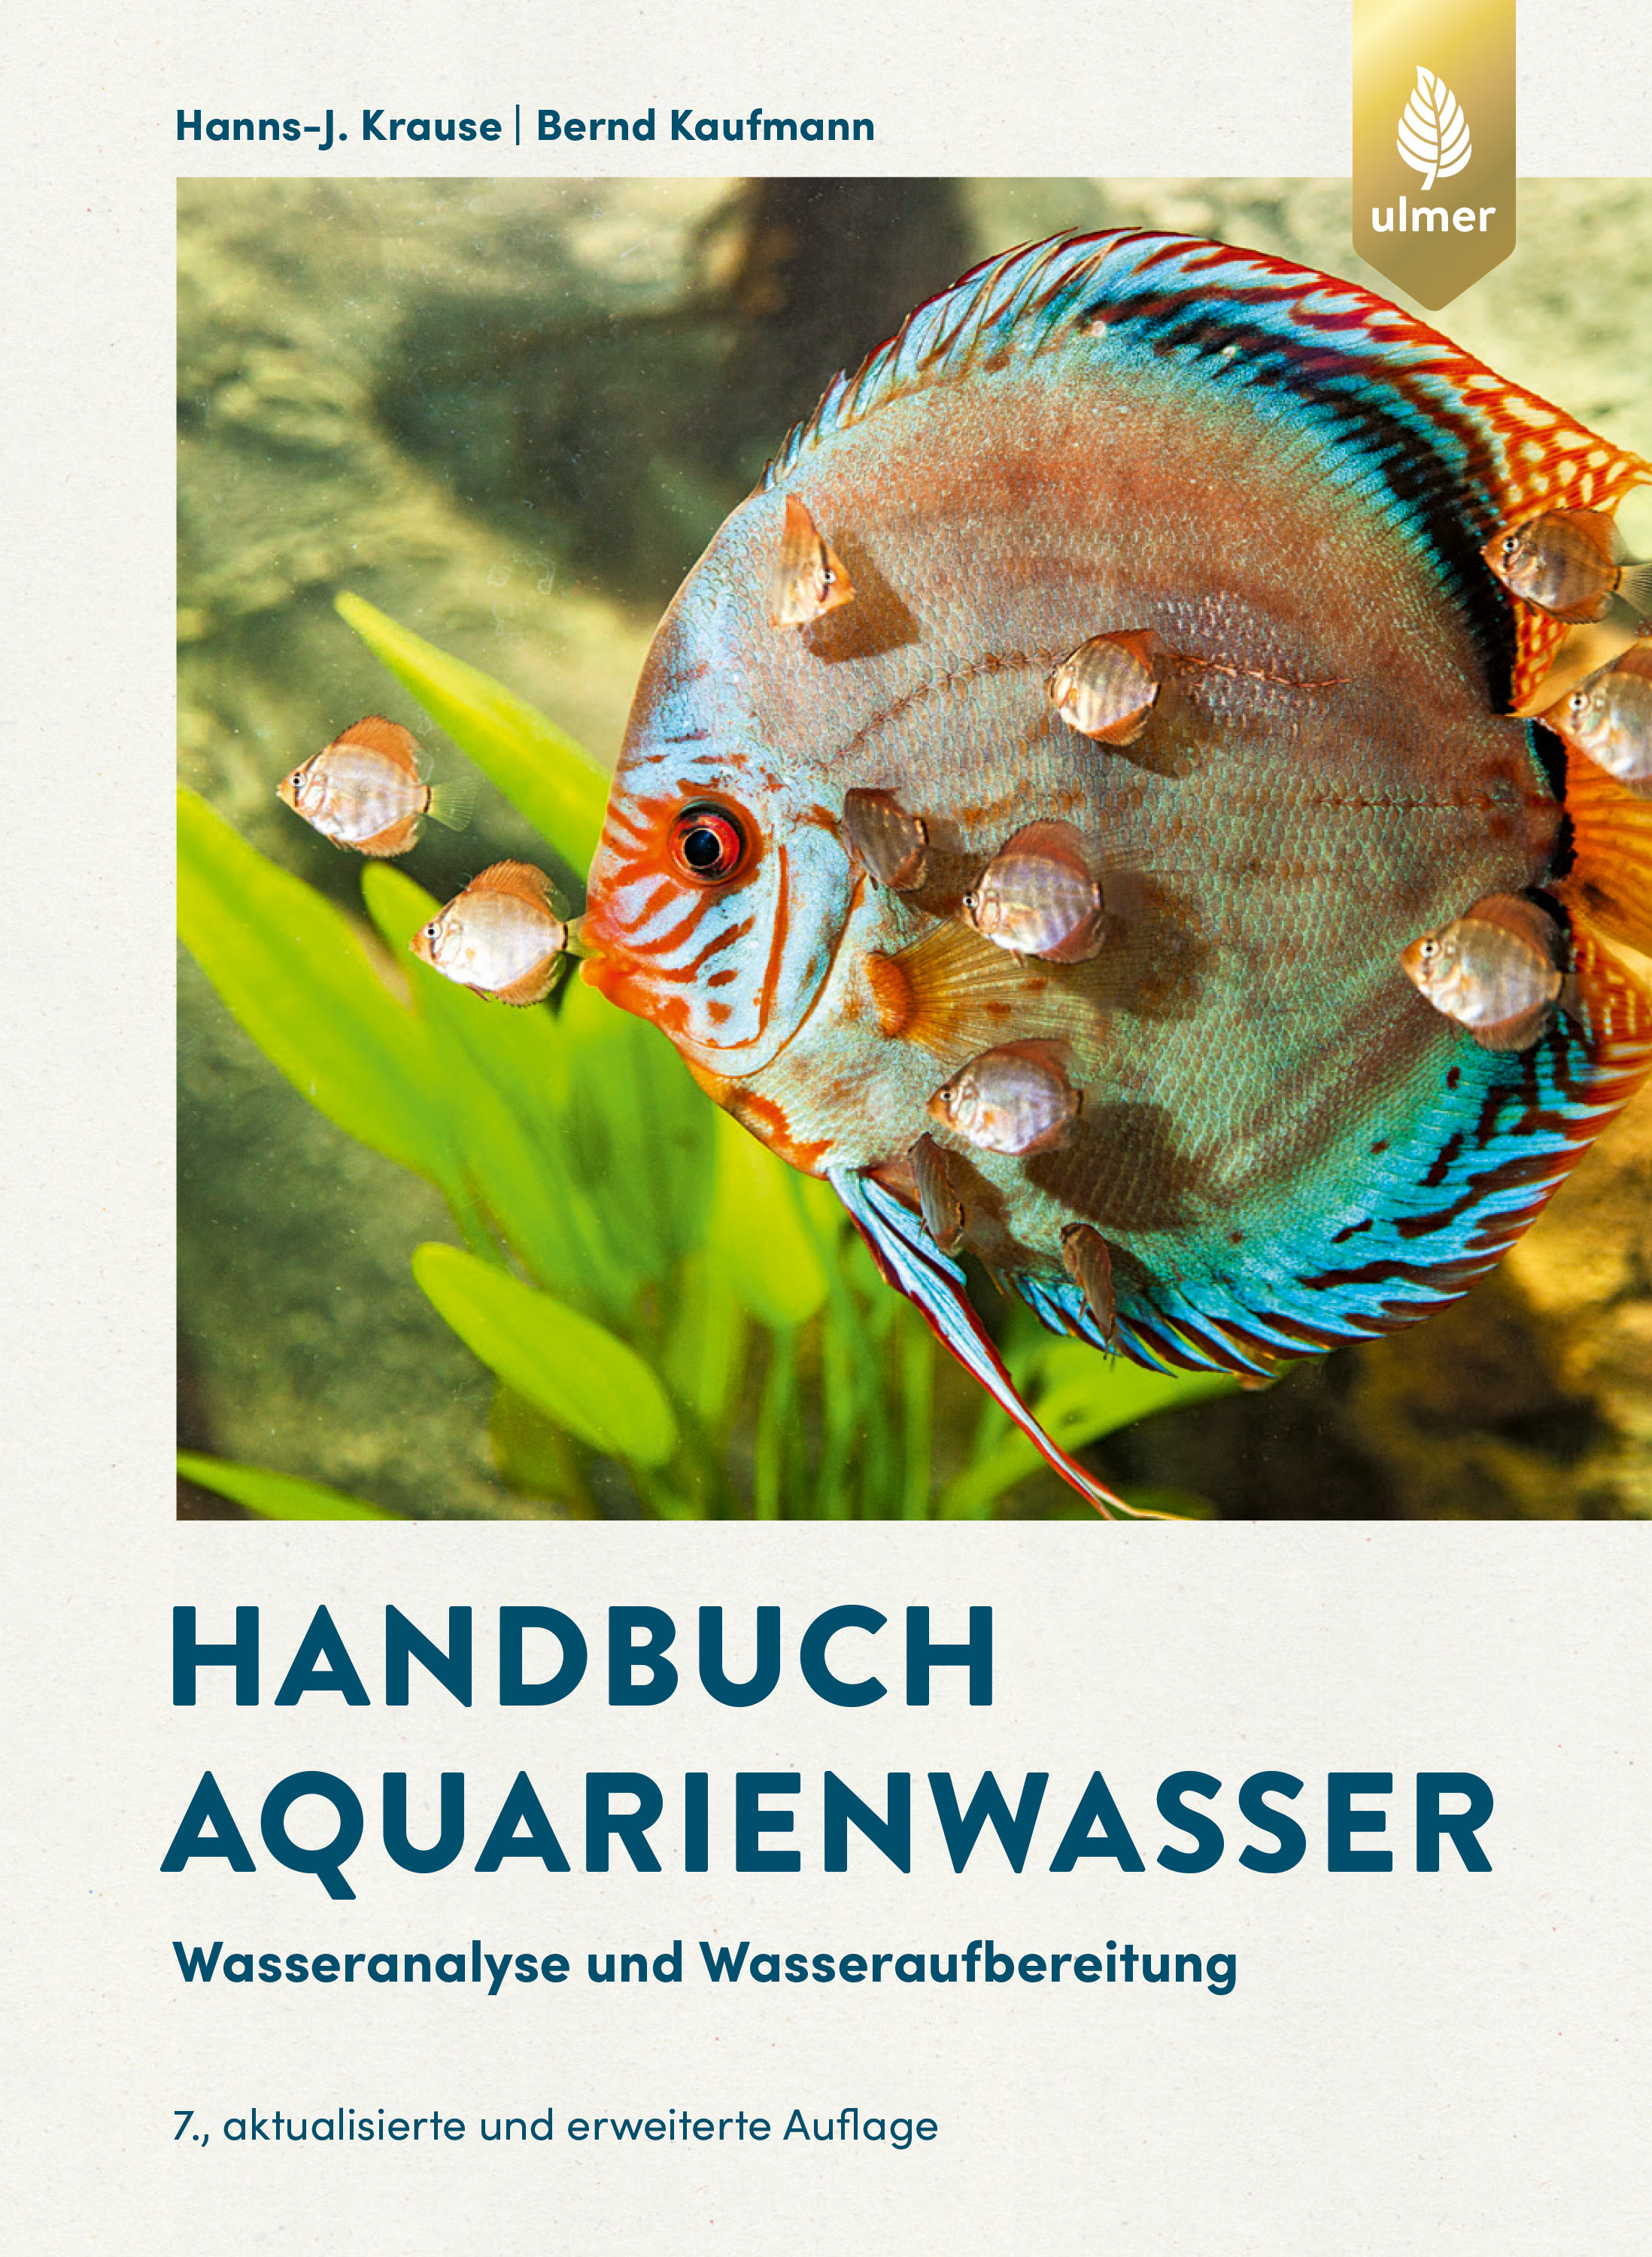 Handbuch Aquarienwasser / Hanns-J. Krause, Bernd Kaufmann